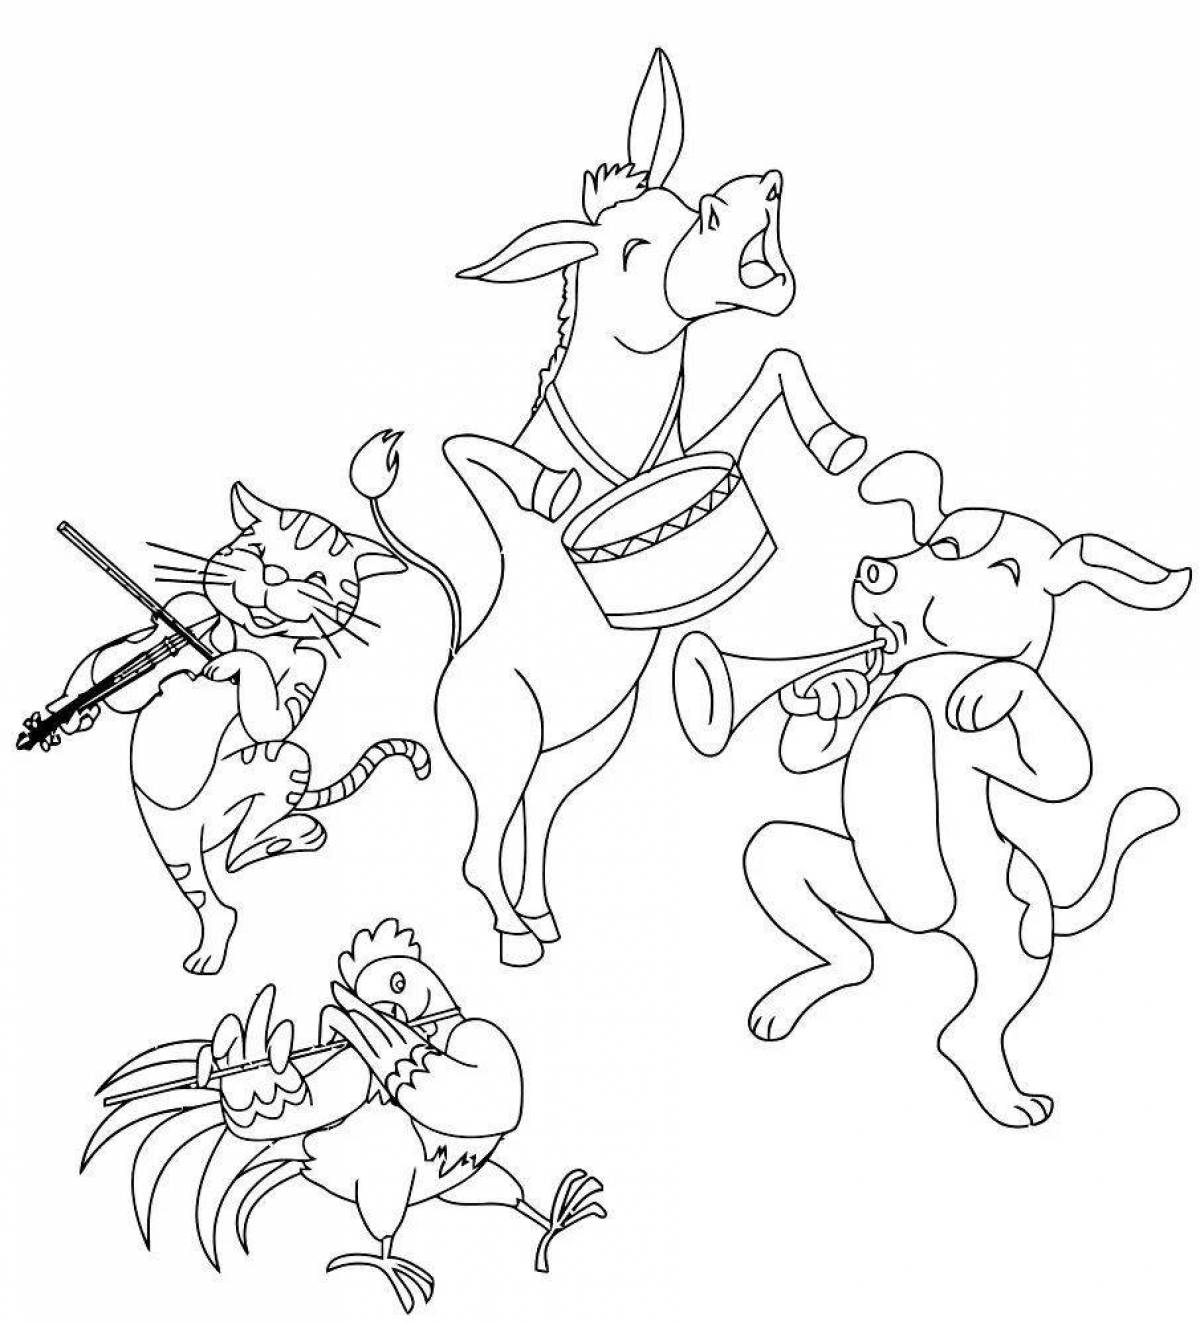 Joyful fable quartet coloring page